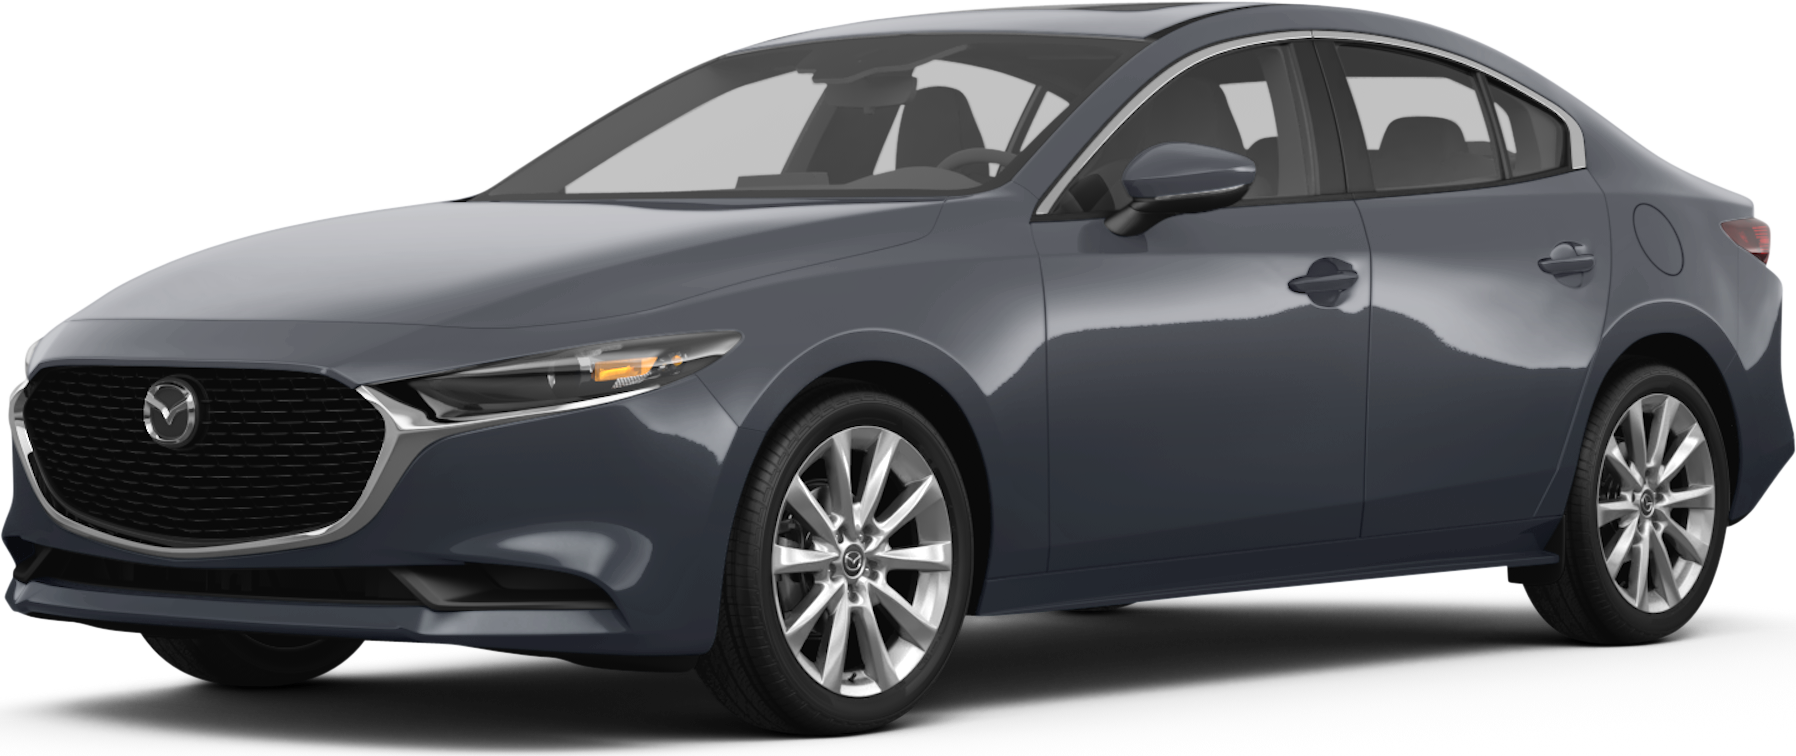 2016 Mazda Mazda3 Specs, Price, MPG & Reviews